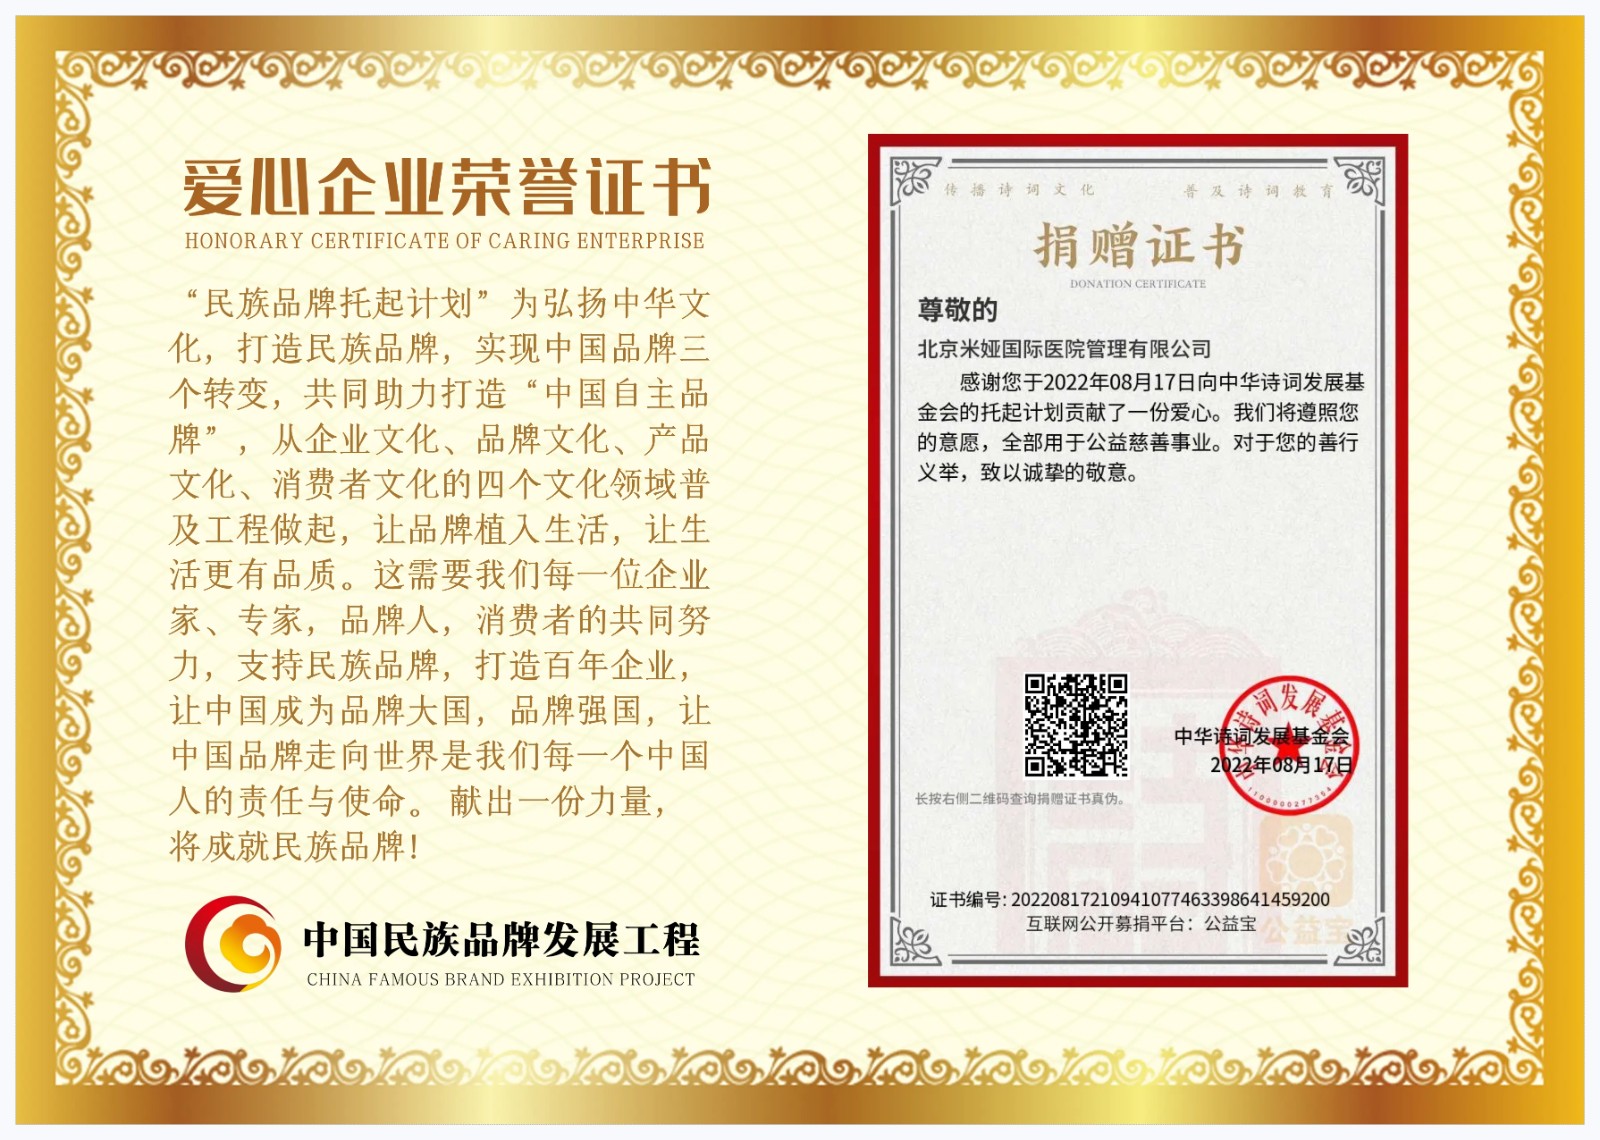 北京米娅国际医院管理有限公司爱心企业证书.jpeg